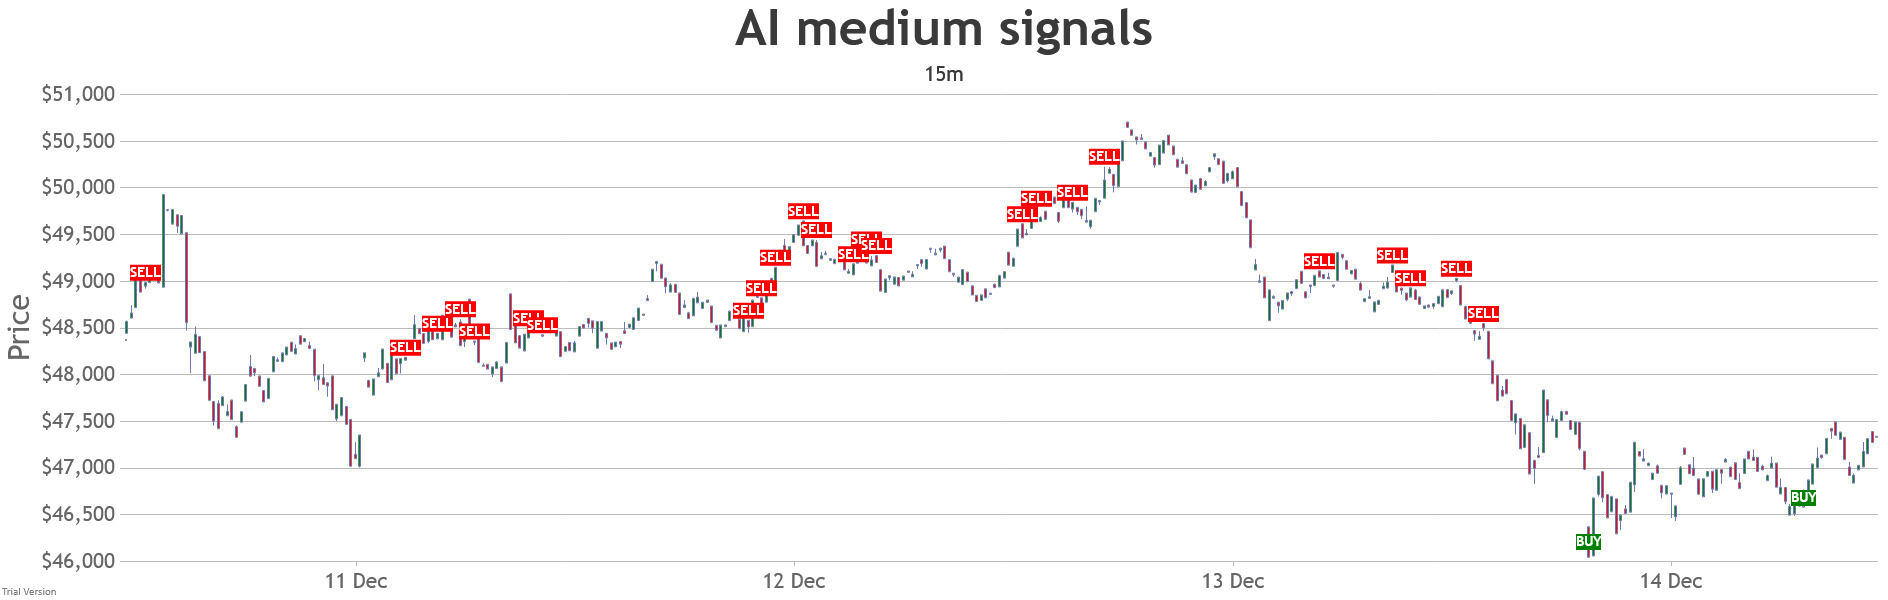 15min-combined-medium-ai-signals